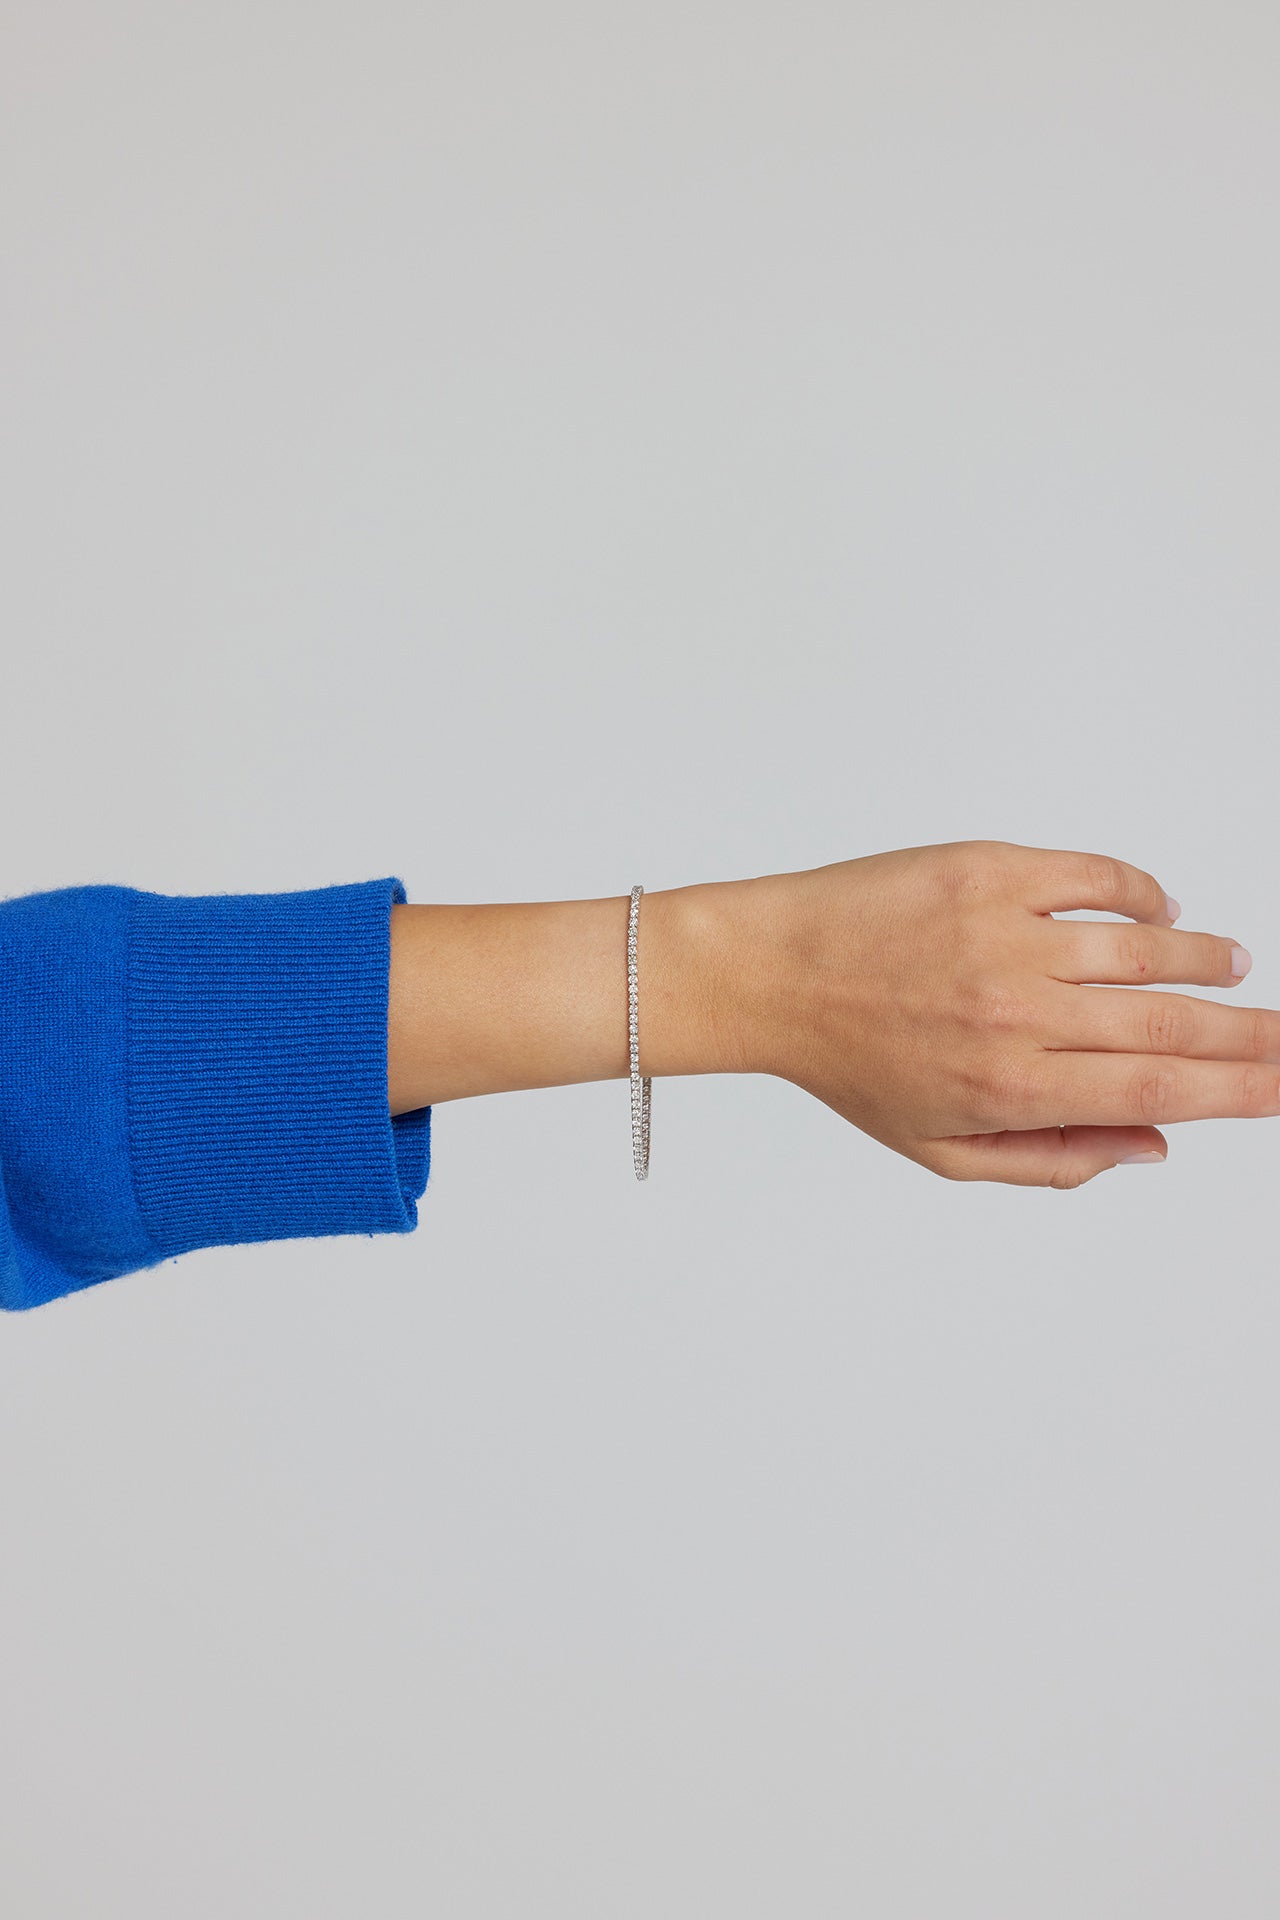 Tennis Bracelets for Small Wrists - Alexis Jae Jewelry